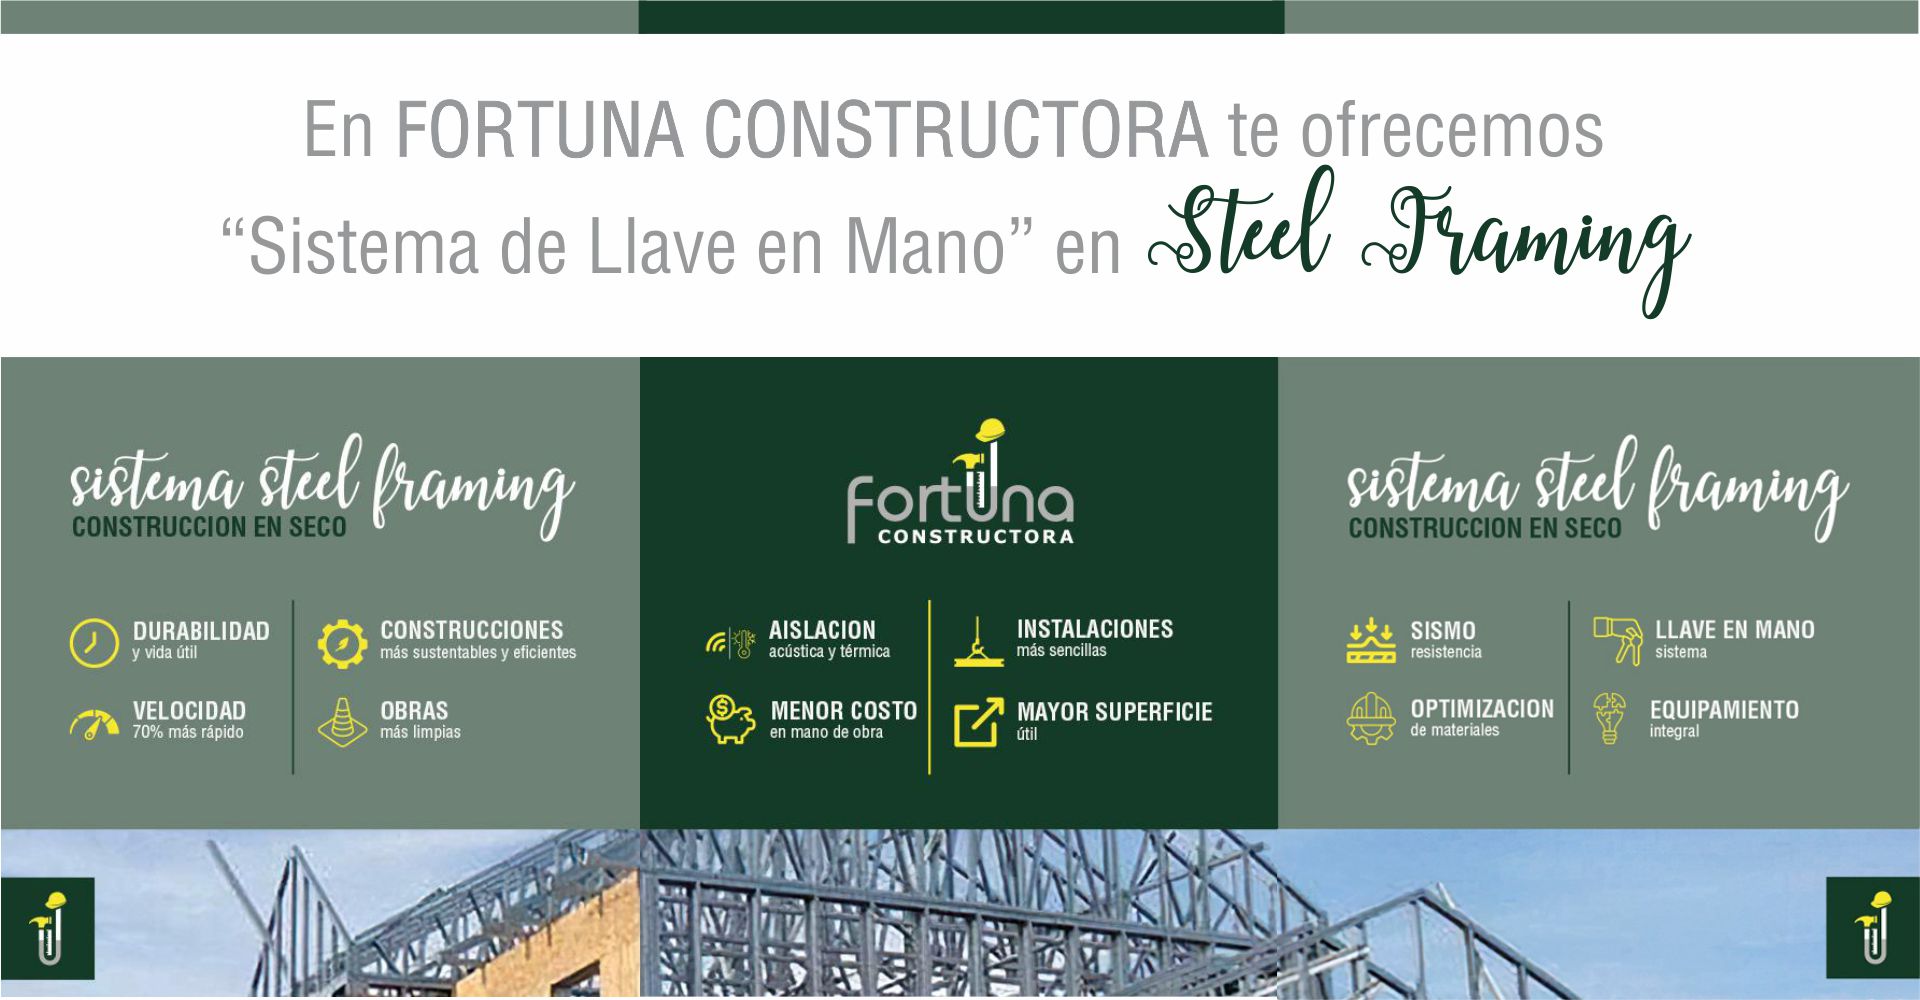 #SteelFraming #SteelFrame #FortunaConstructora #Constructora #ConstruccionEnSeco #HoldingFortuna #FortunaHolding